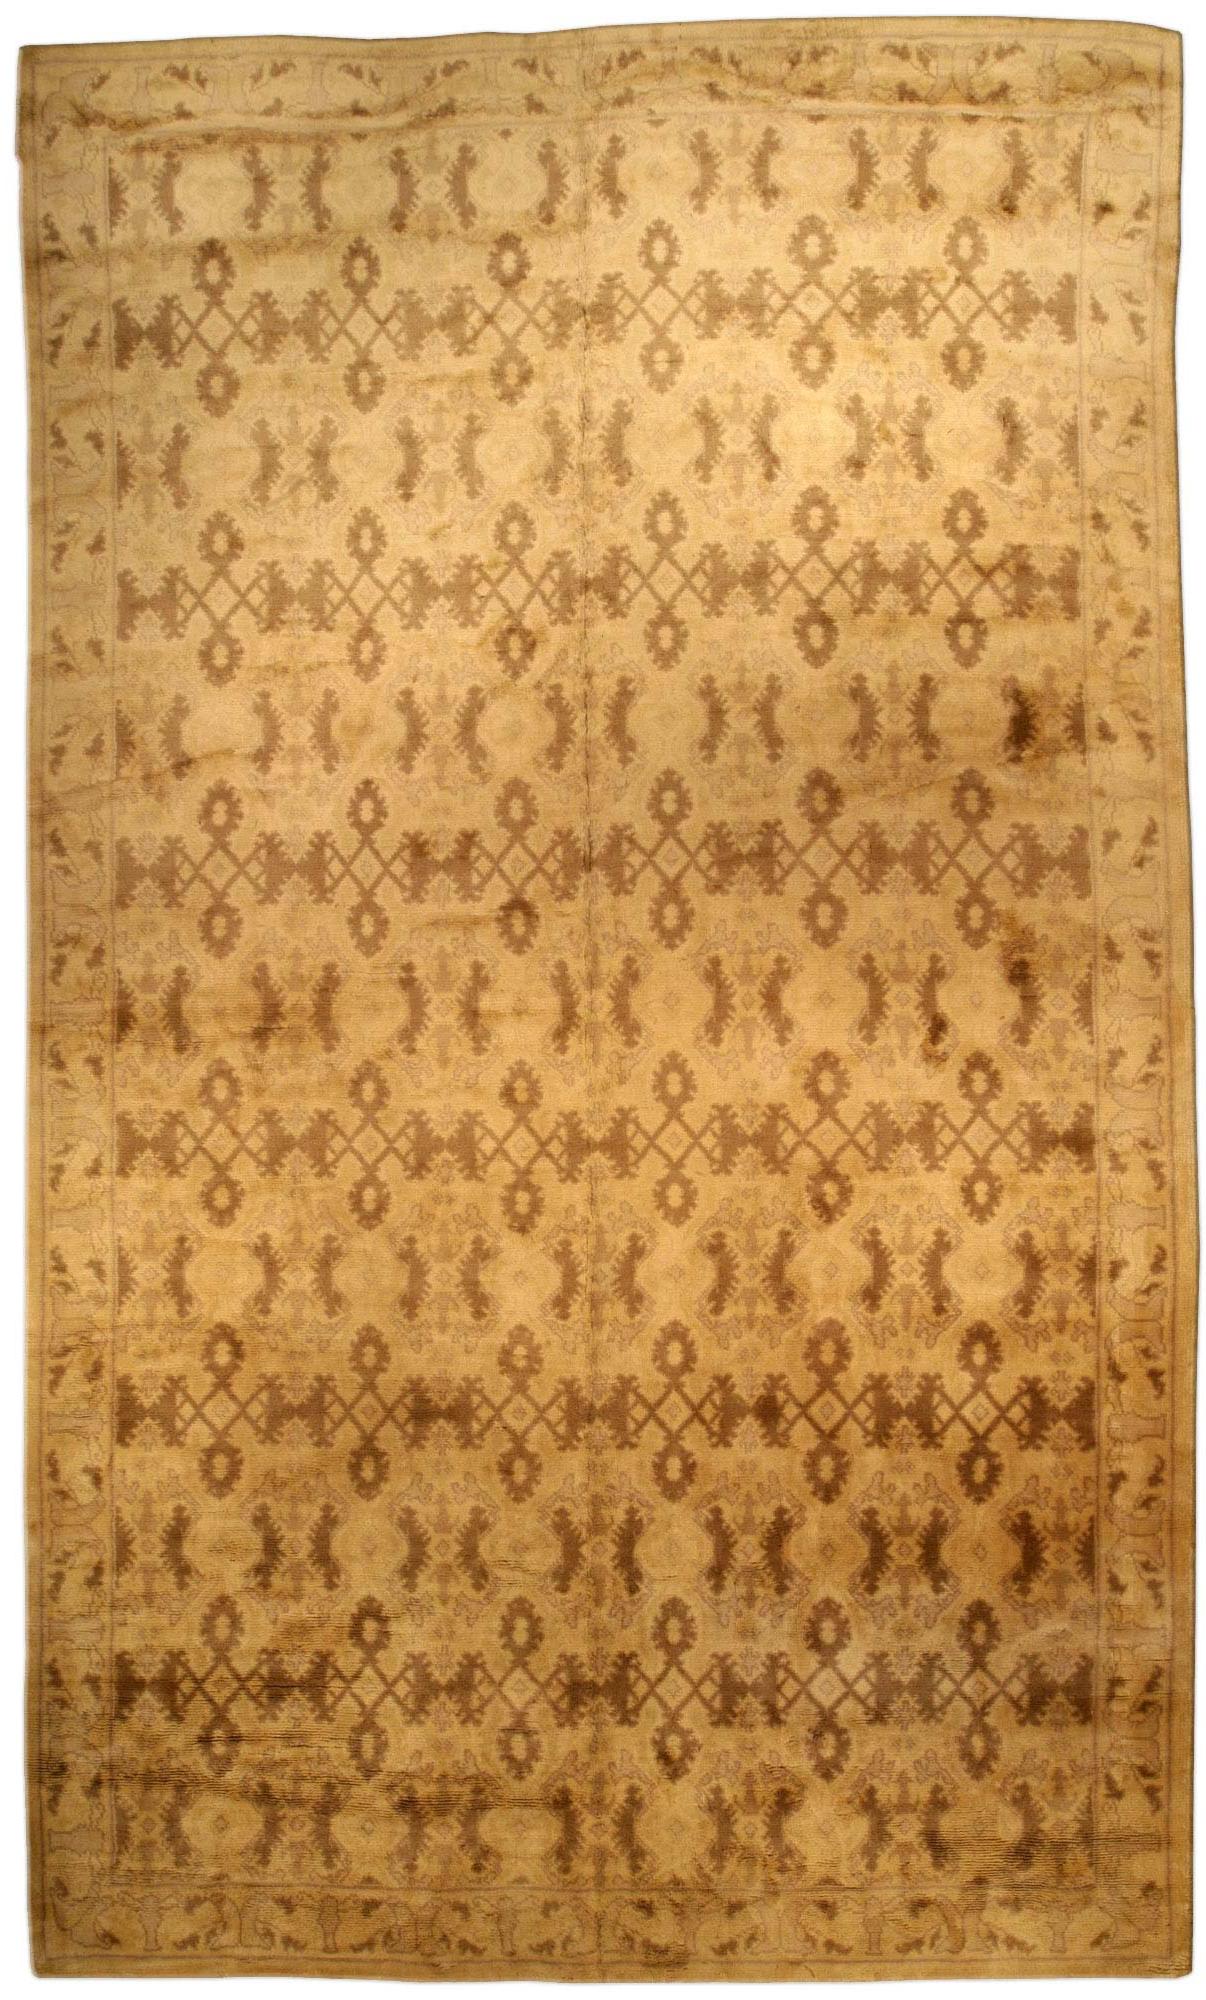 Vintage Spanish Beige Handmade Wool Rug